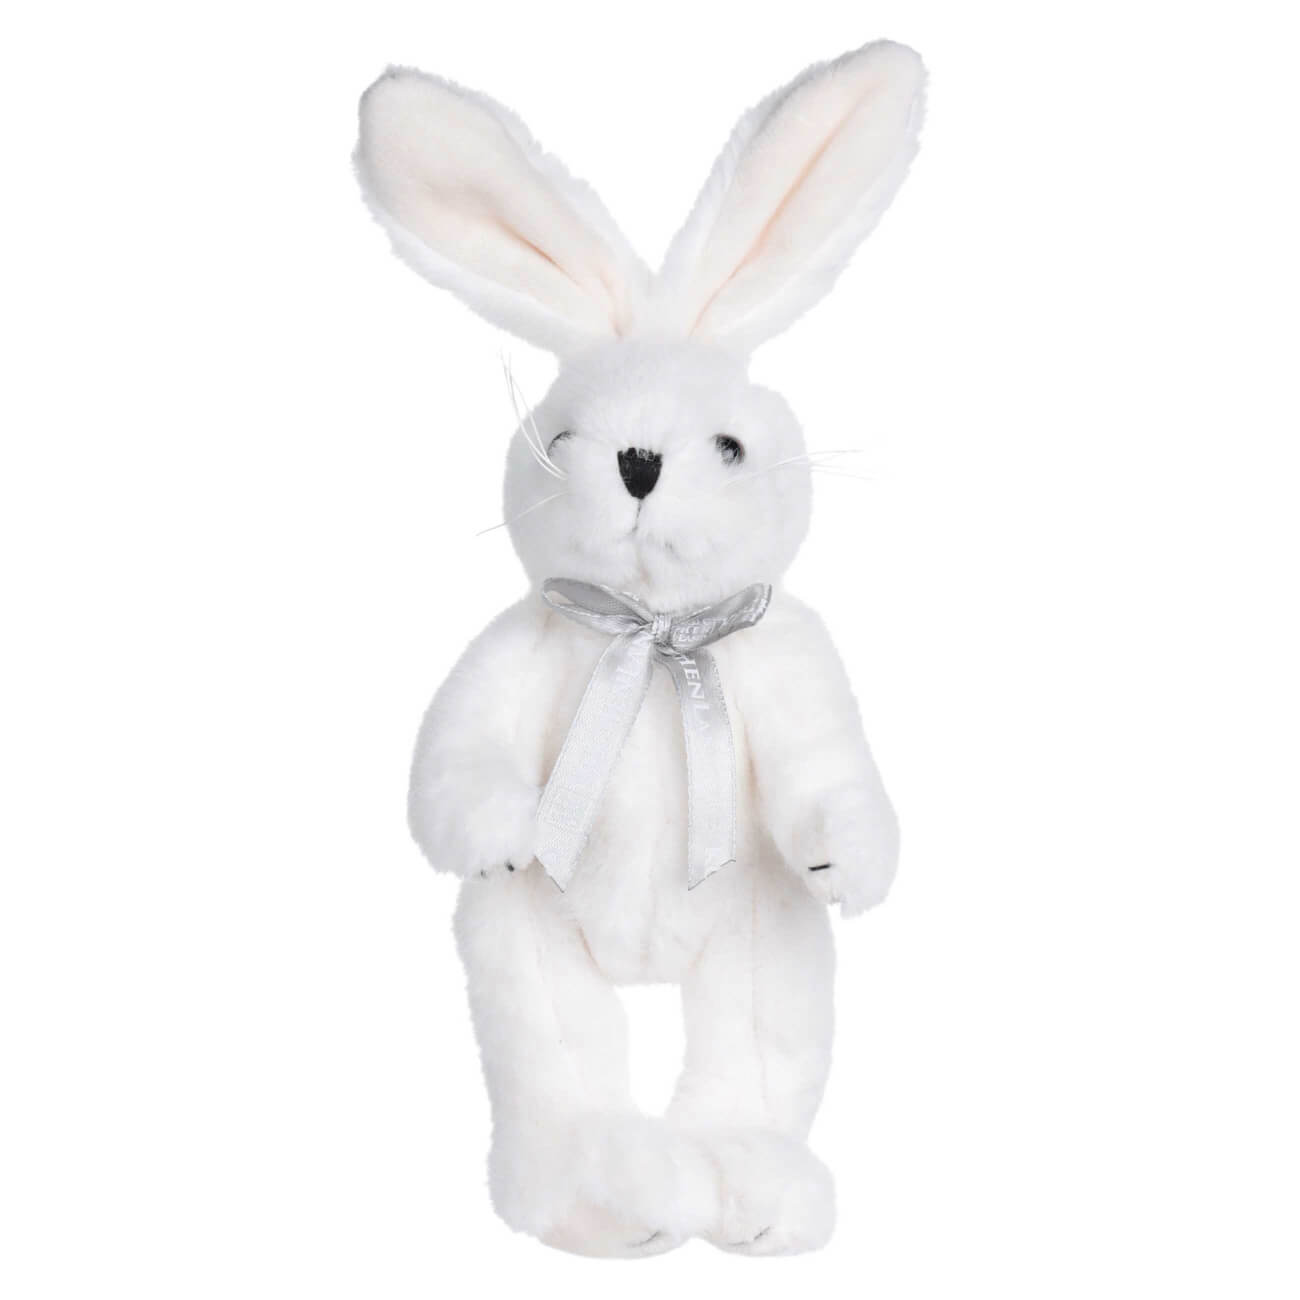 Игрушка, 20 см, мягкая, с подвижными лапами, полиэстер, белая, Кролик, Rabbit toy мягкая игрушка зайка ми в теплом платье 25 см